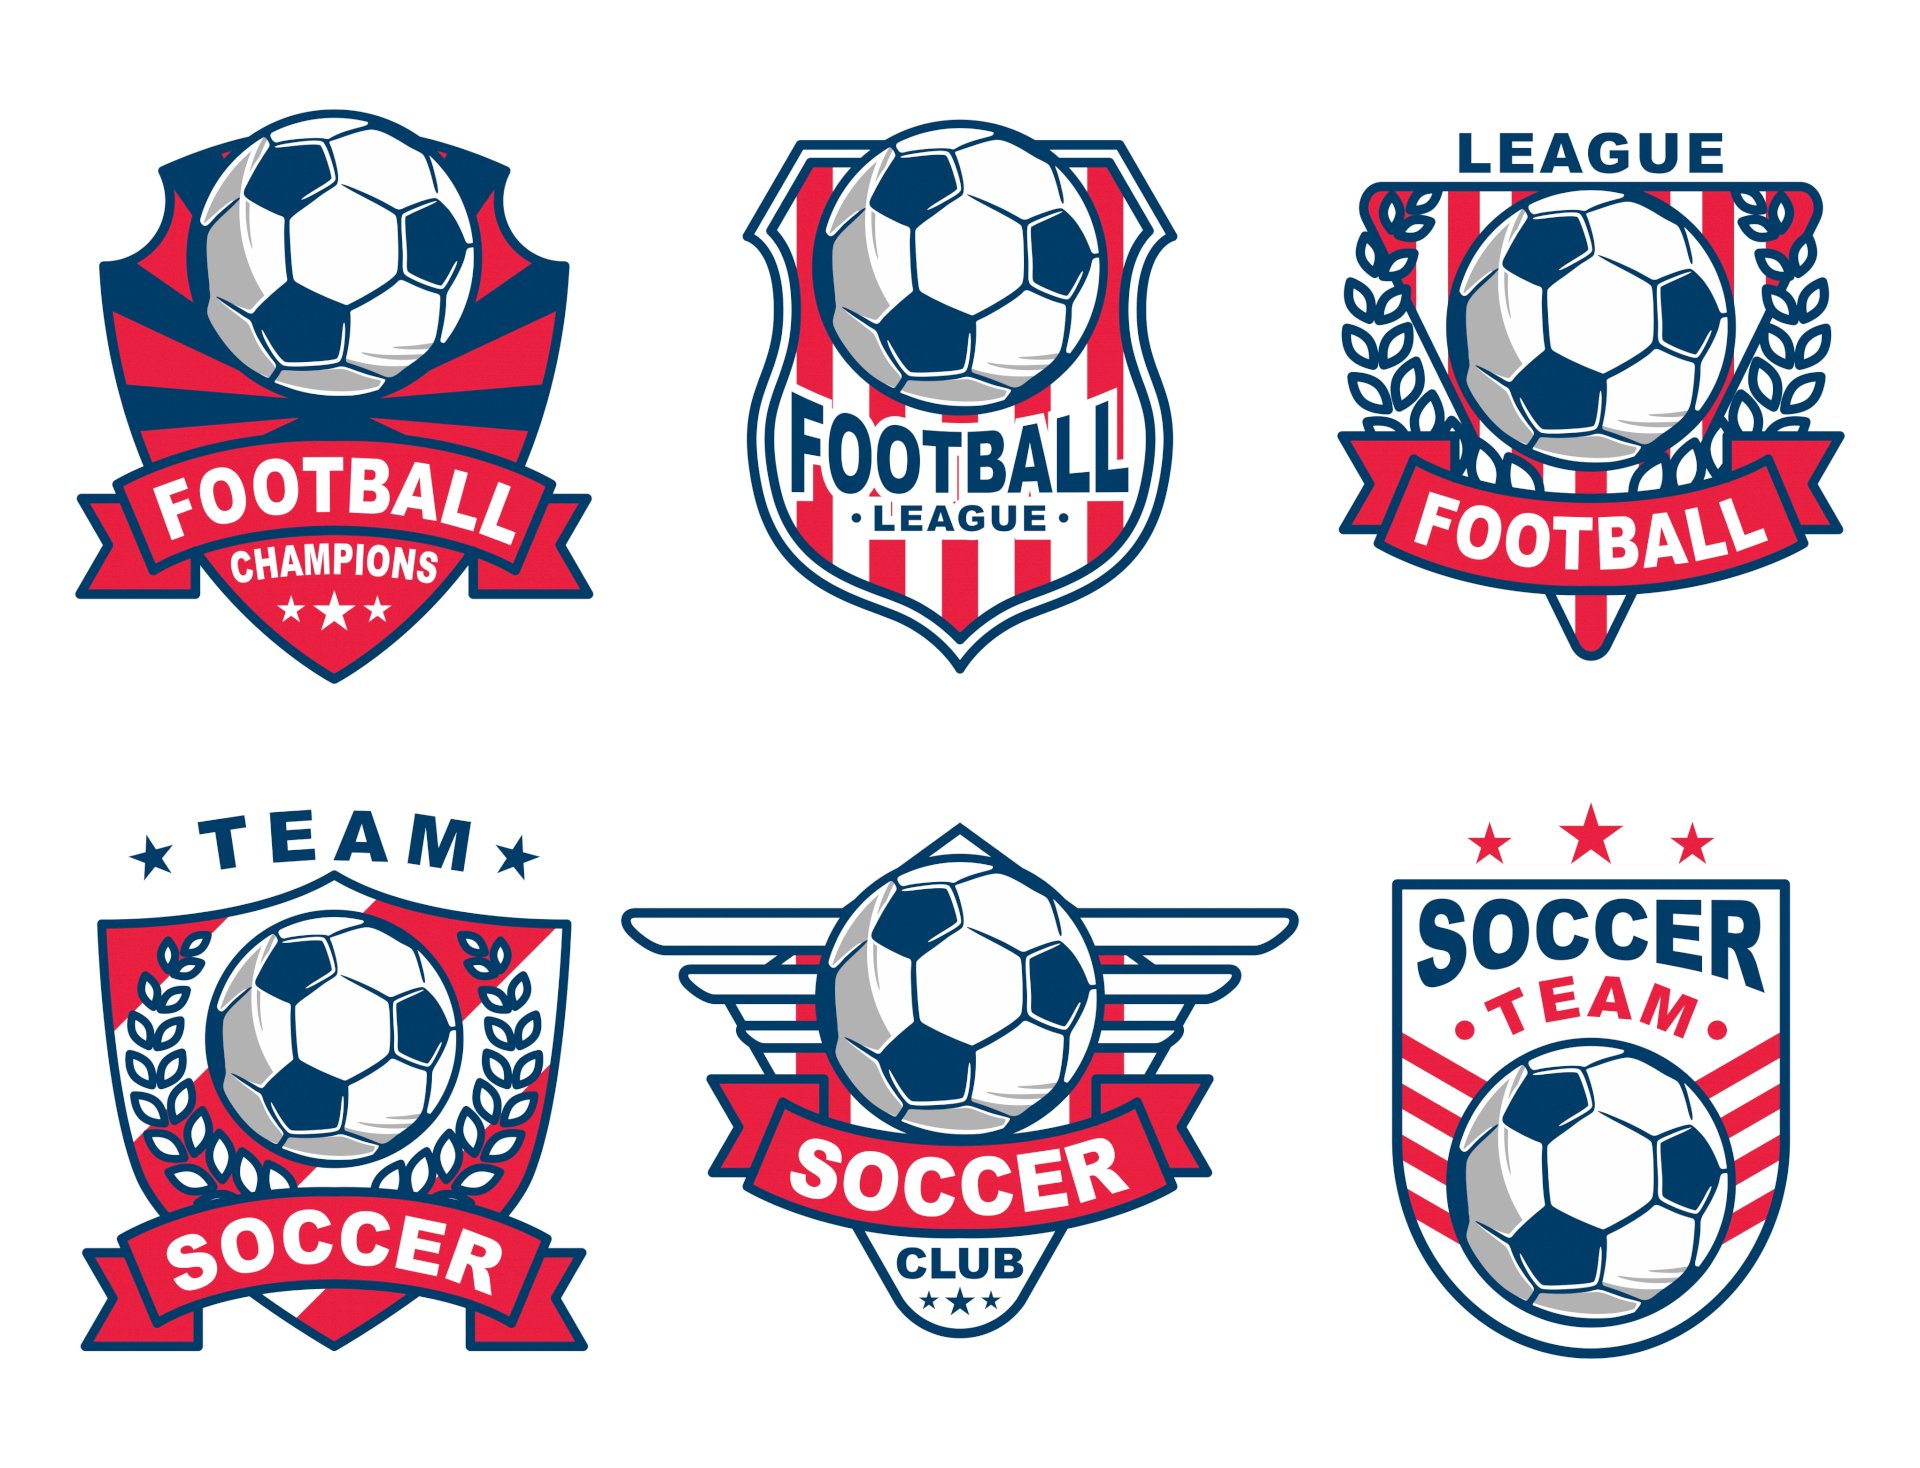 Thiết kế logo bóng đá vector đẹp chuẩn mực cho các đội bóng